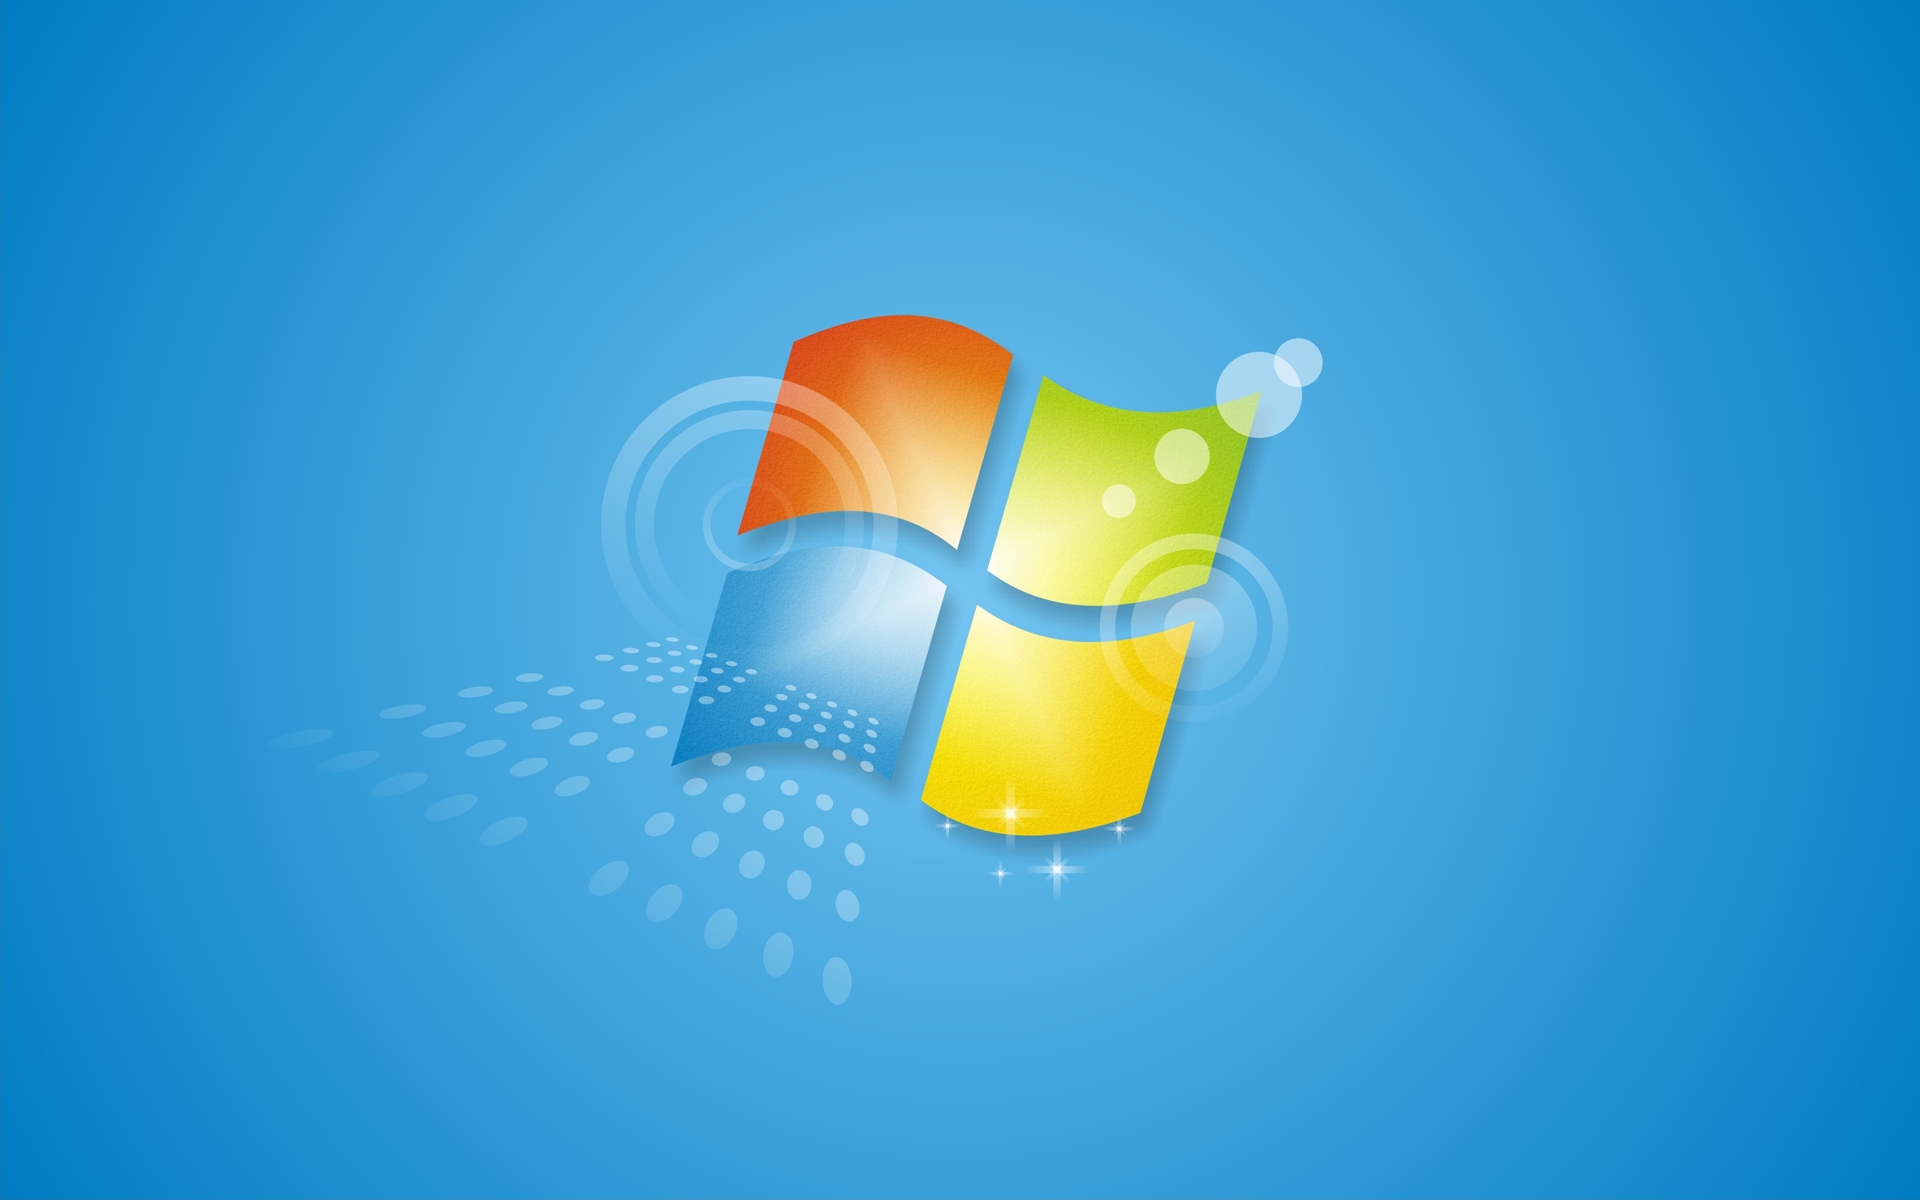 Windows 7 là một trong những hệ điều hành phổ biến nhất hiện nay. Với giao diện trực quan, dễ sử dụng cùng những tính năng vô cùng tiện lợi, Windows 7 đã và đang được người dùng yêu thích. Hãy khám phá thêm về hệ điều hành này để hiểu rõ hơn về lý do vì sao nó trở thành lựa chọn hàng đầu của rất nhiều người dùng.